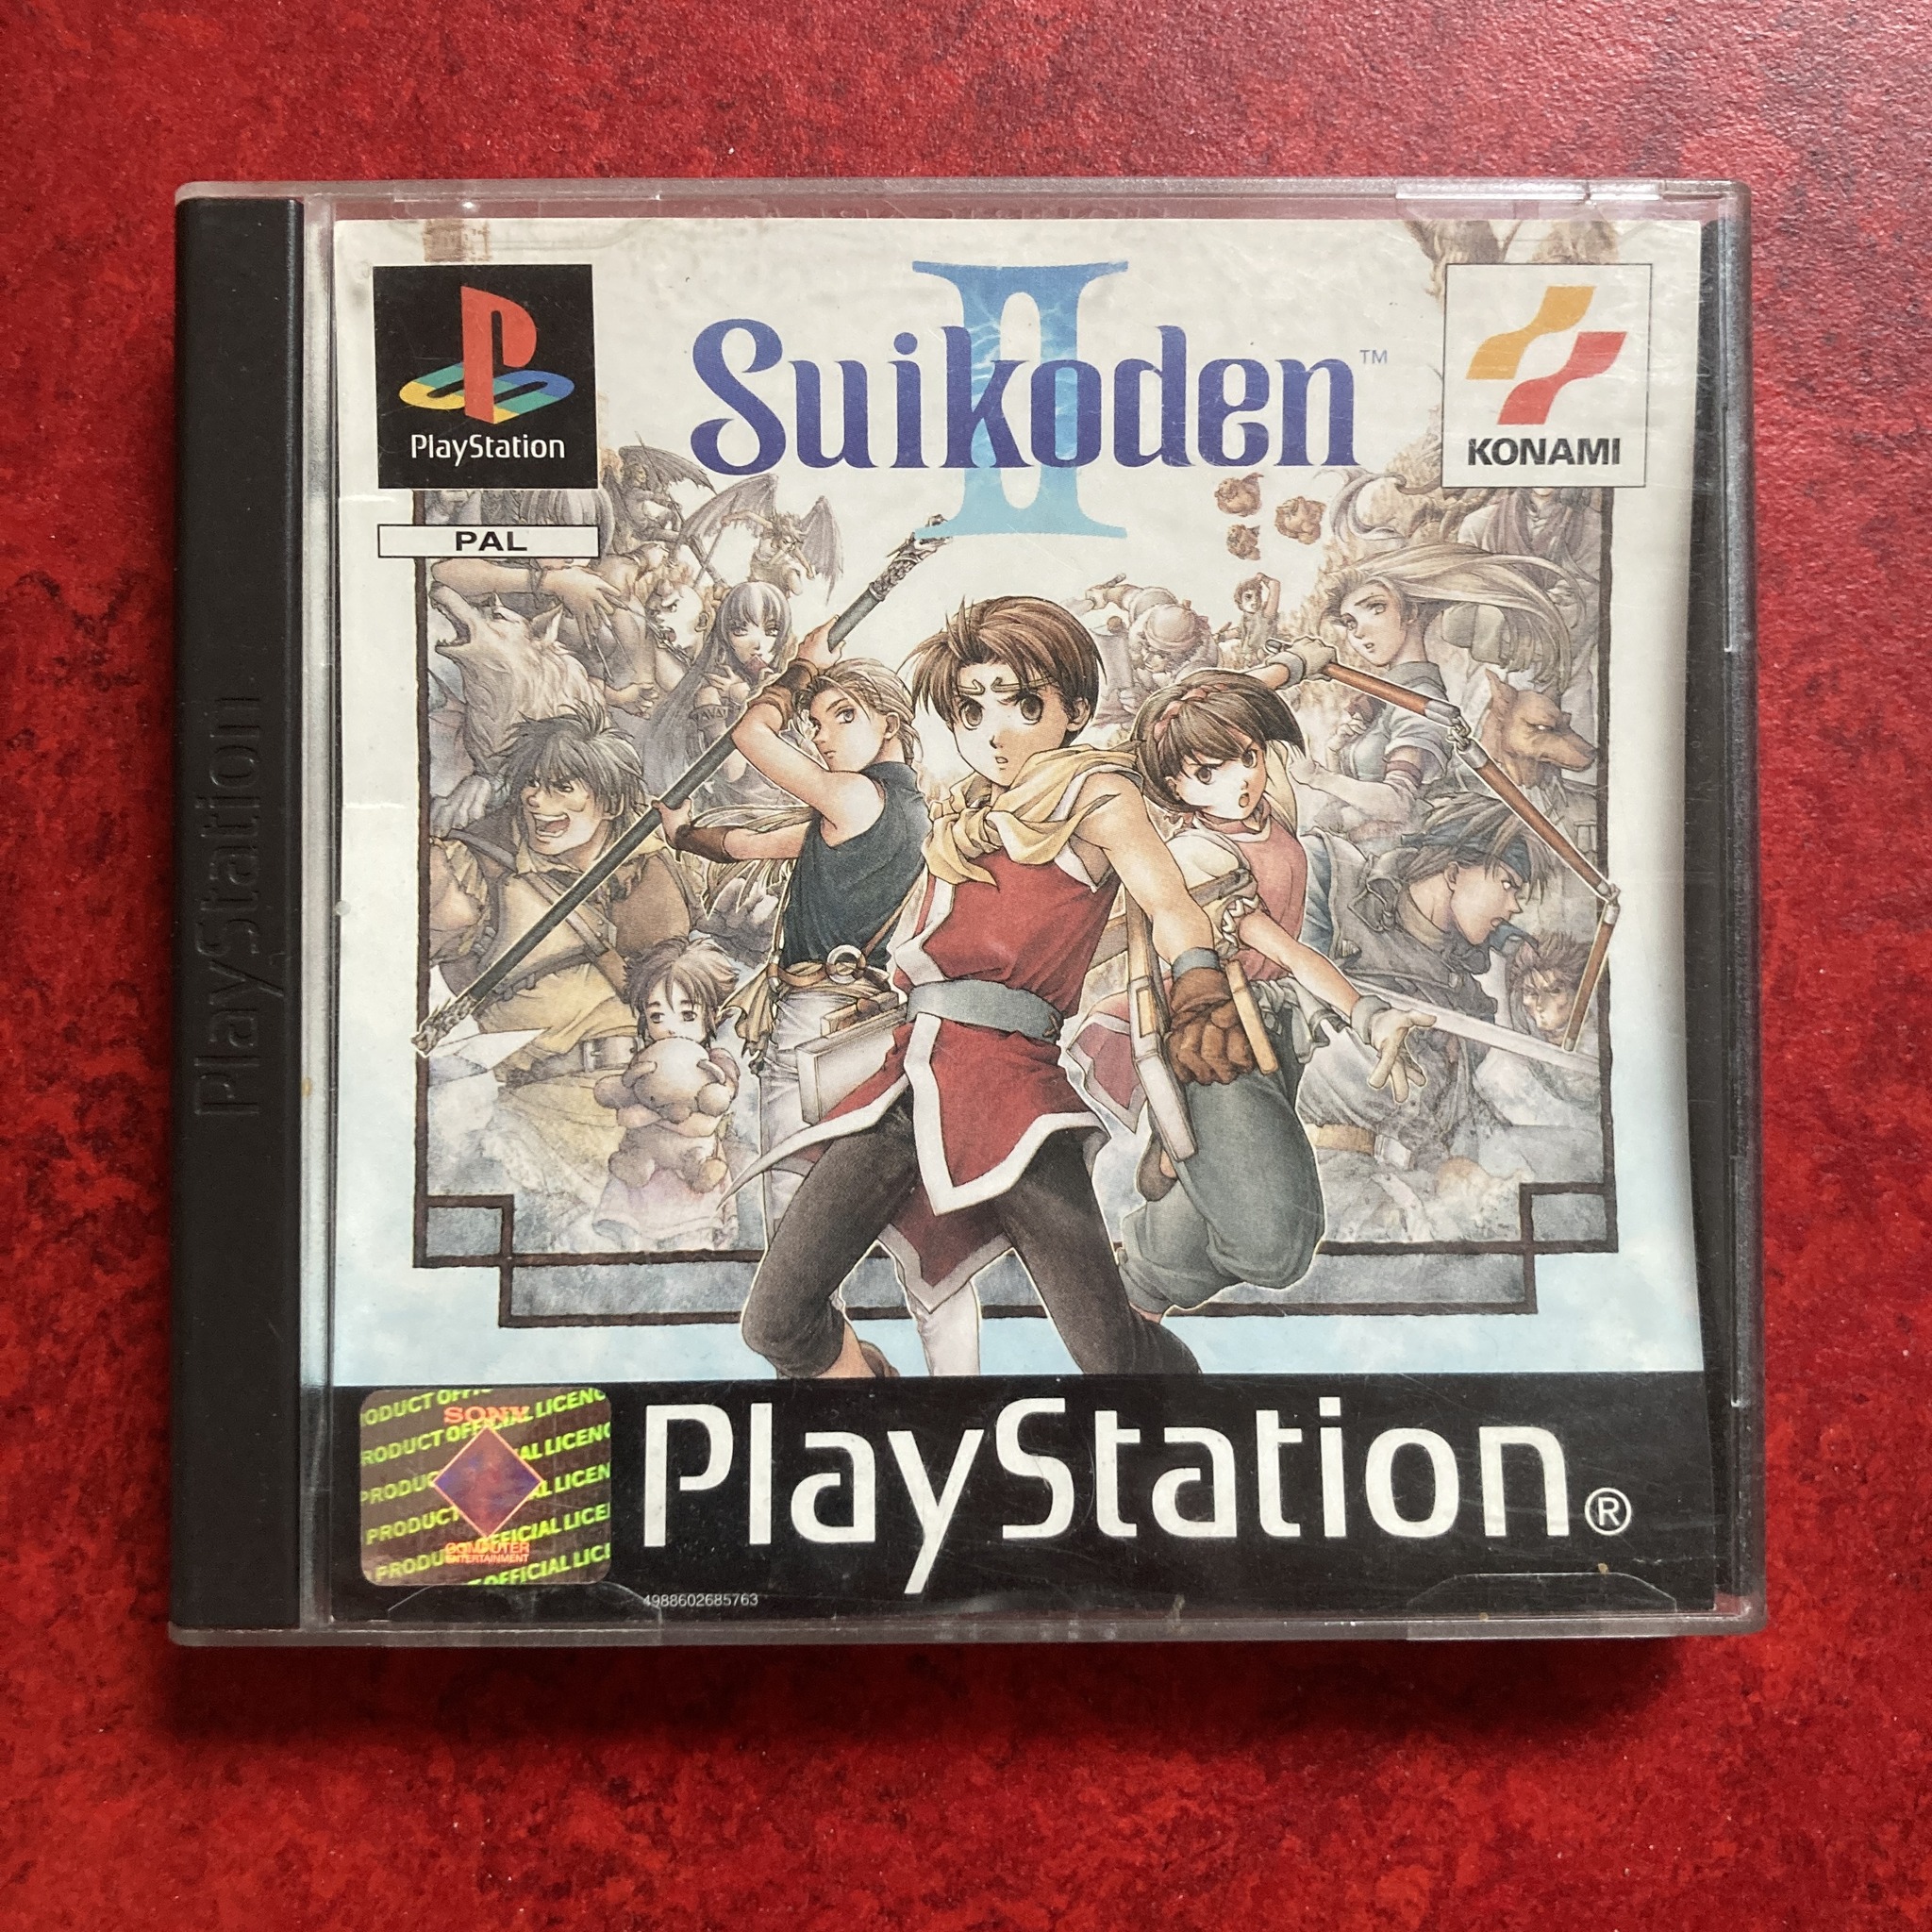 Suikoden II / Gensōsuikoden II (PlayStation)